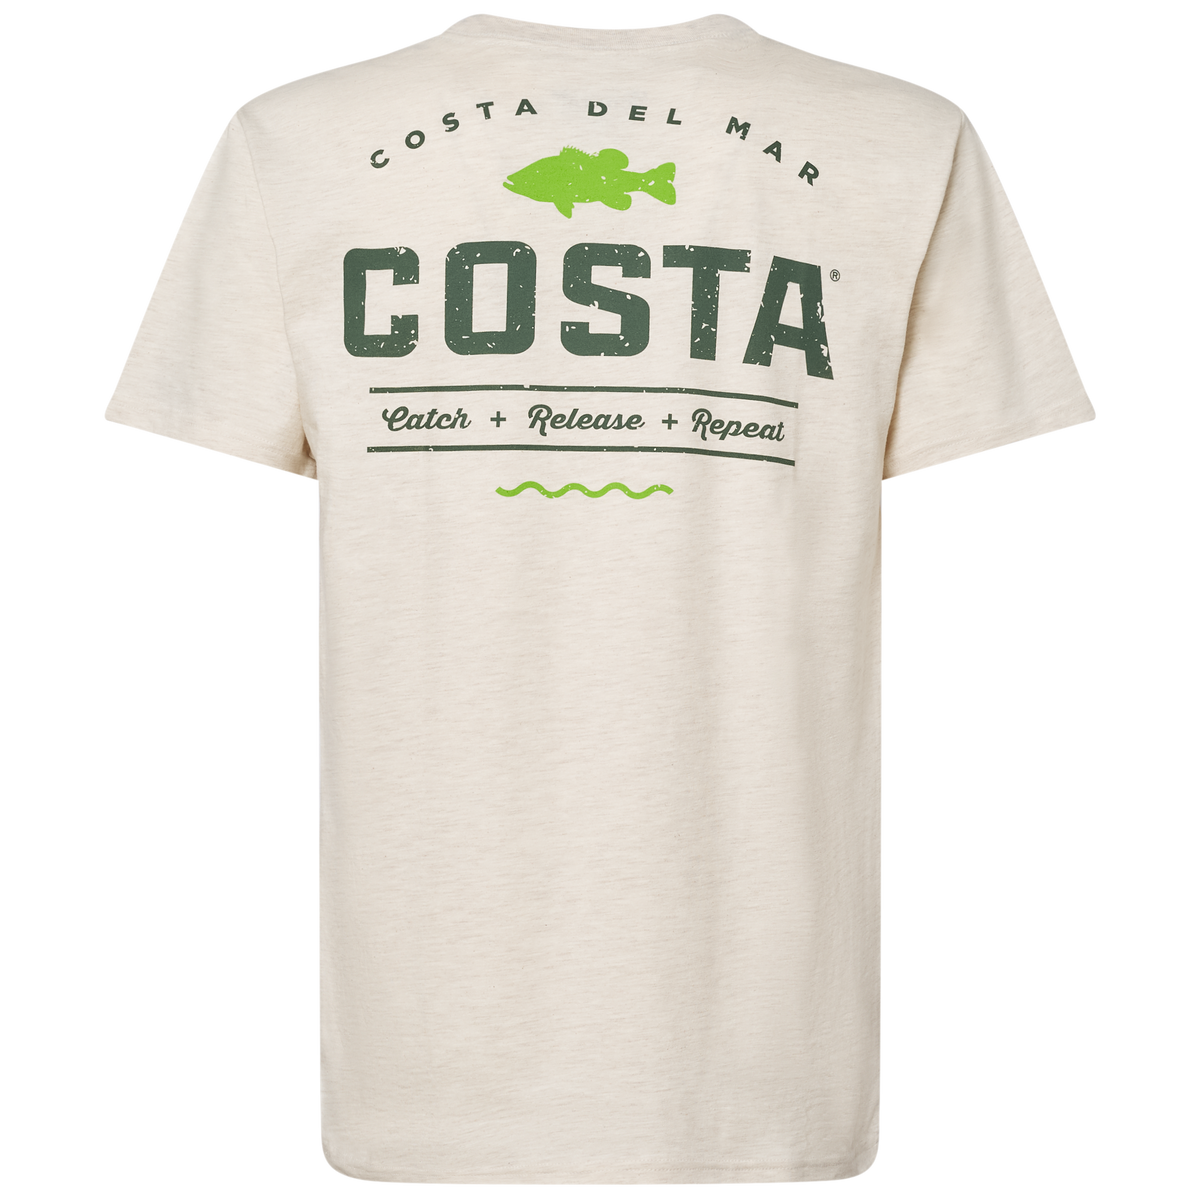 Costa Topwater Short Sleeve Tee